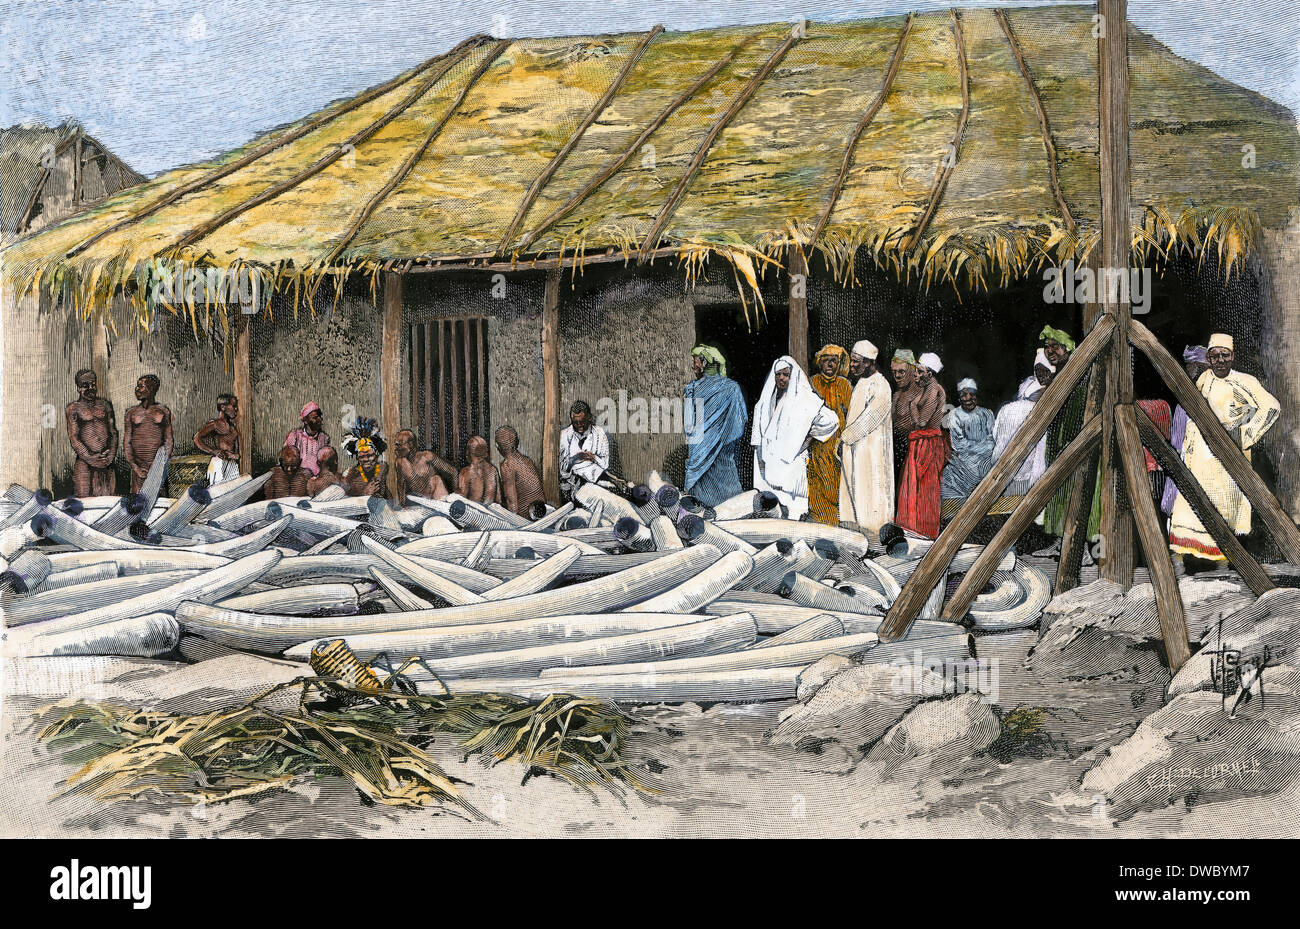 L'avorio visualizzato a Tippu Tib's camp sul Congo, 1880. Colorate a mano la xilografia Foto Stock